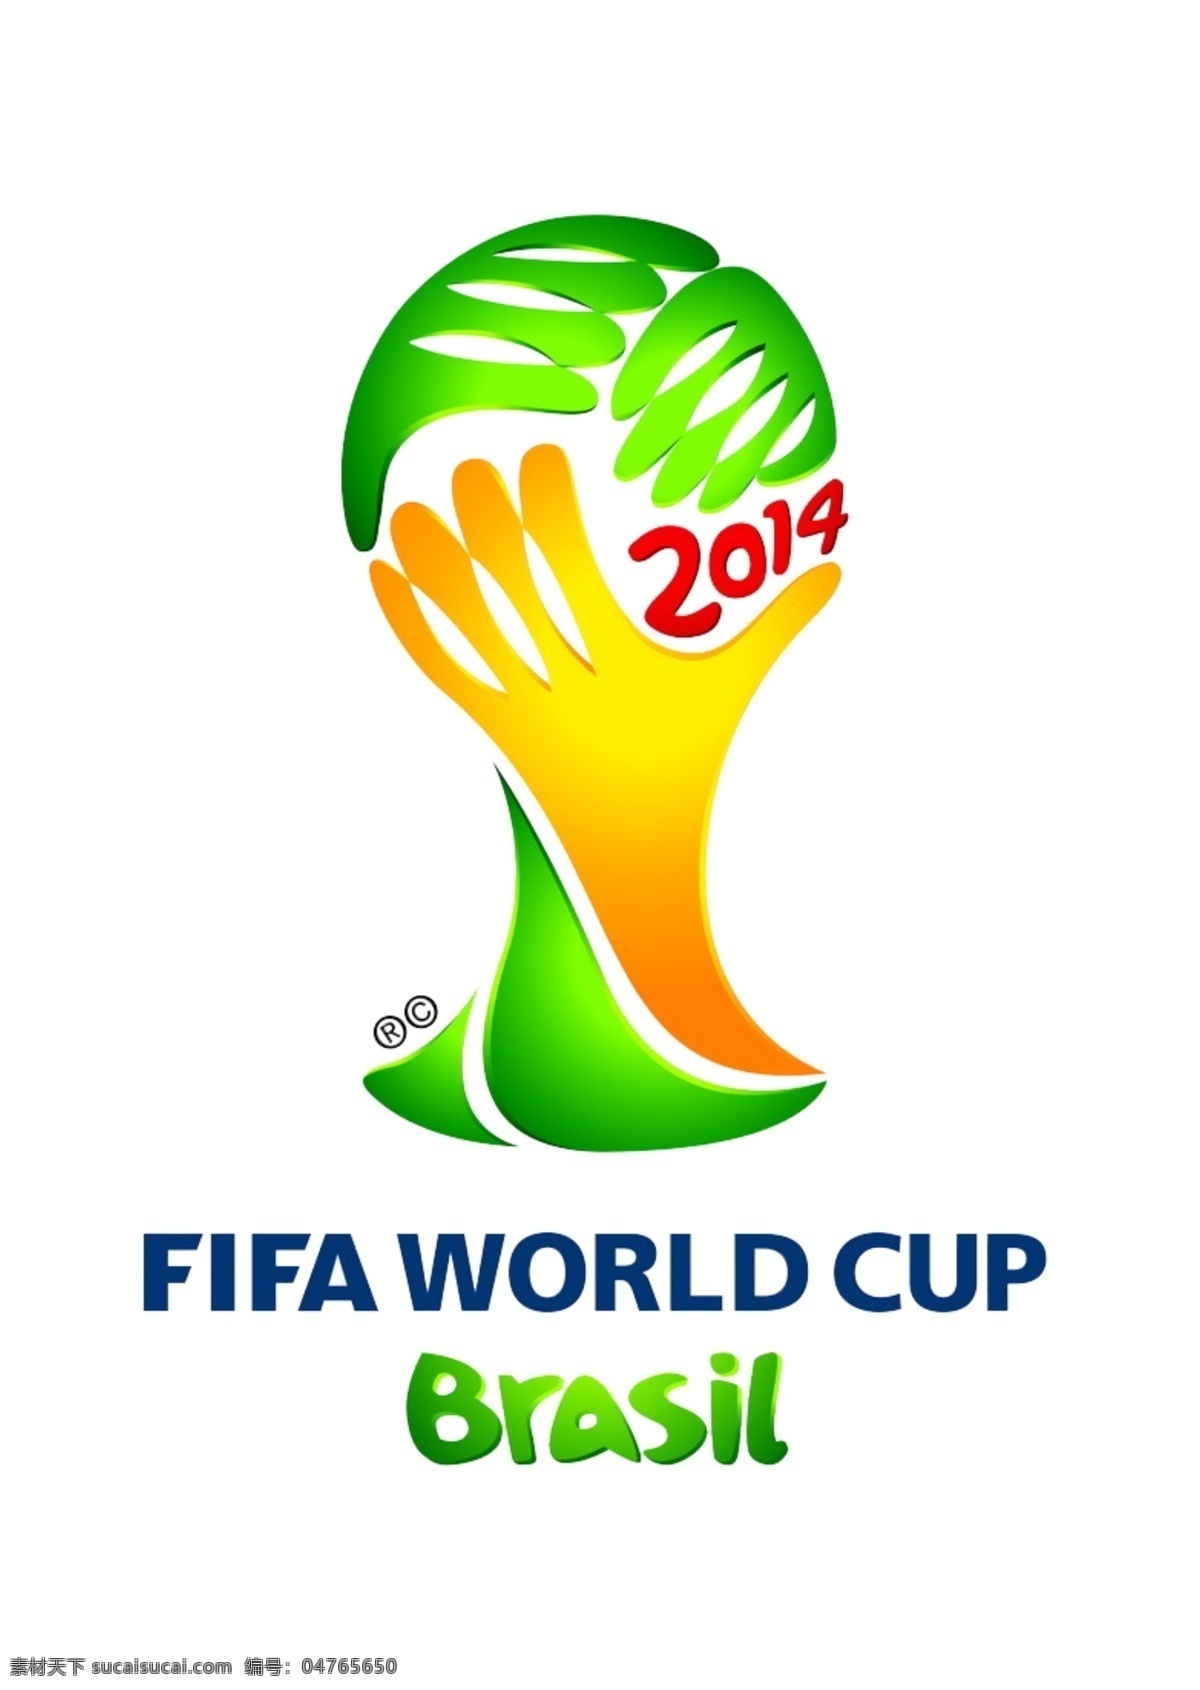 2014 巴西 世界杯 logo logo设计 标志设计 巴西世界杯 世界杯标志 标志 标识 psd素材 源文件 白色